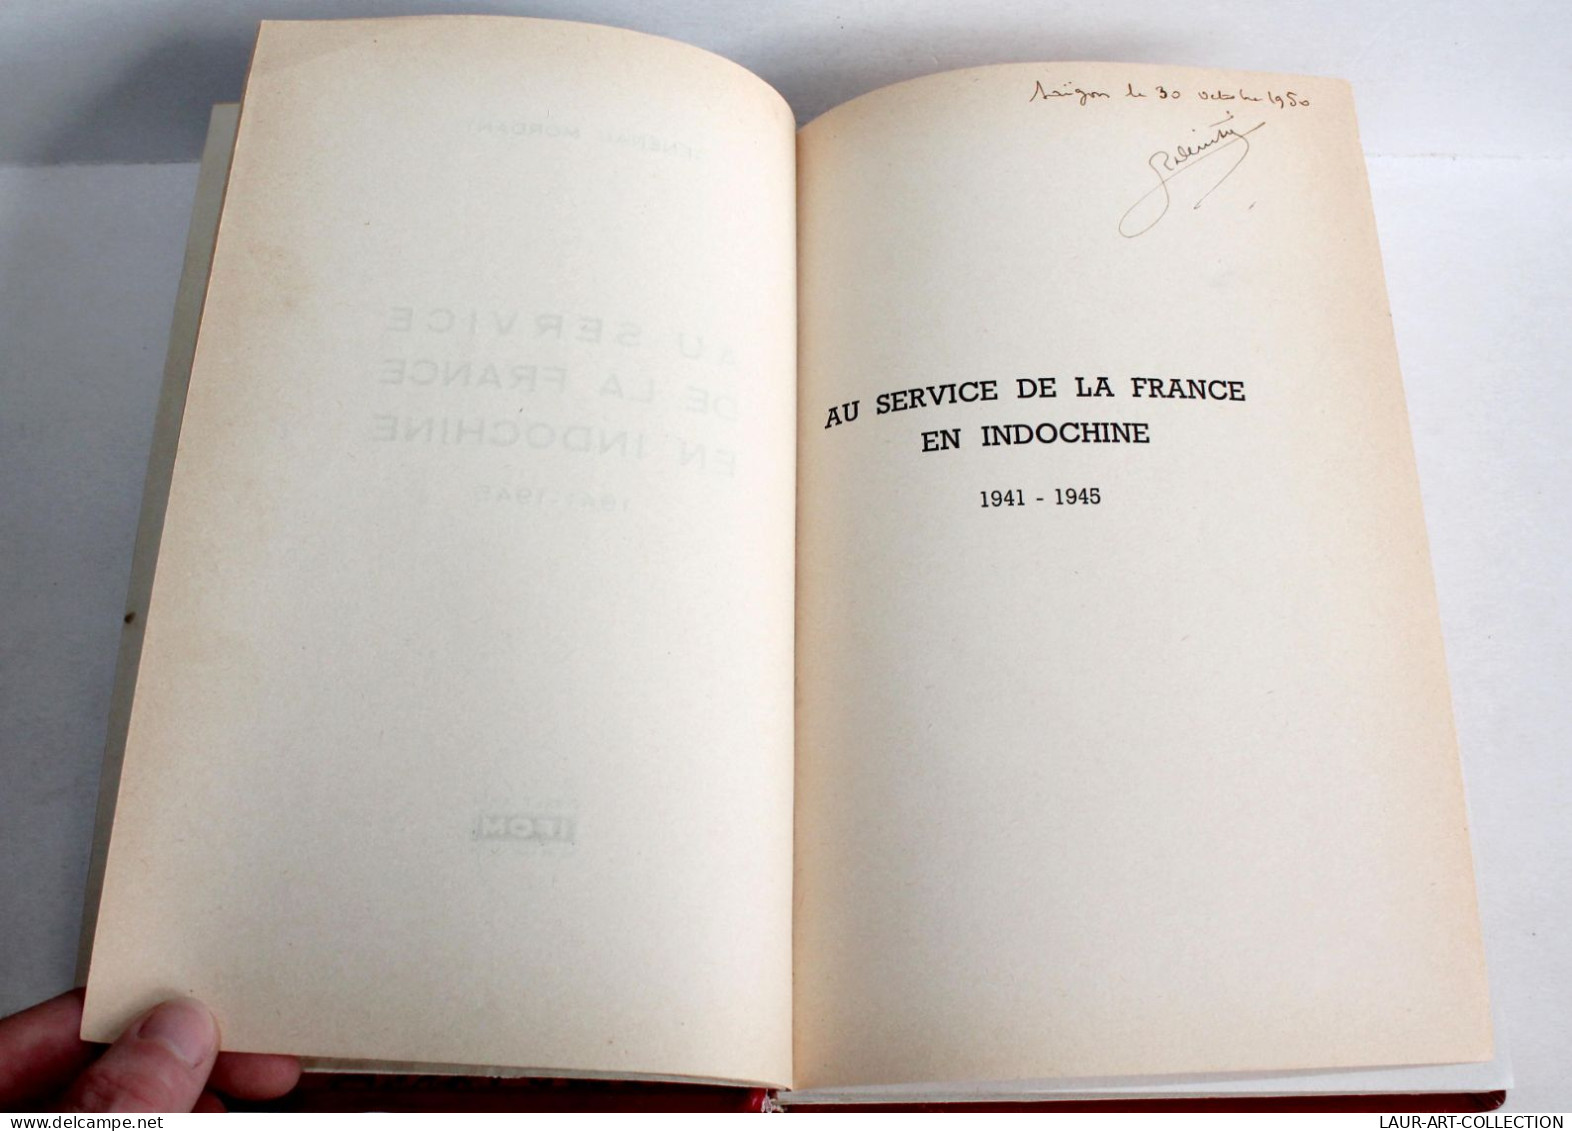 AU SERVICE DE LA FRANCE EN INDOCHINE 1941-1945 Par GENERAL MORDANT 1950 SAIGON / ANCIEN LIVRE XXe SIECLE (2603.109) - Histoire